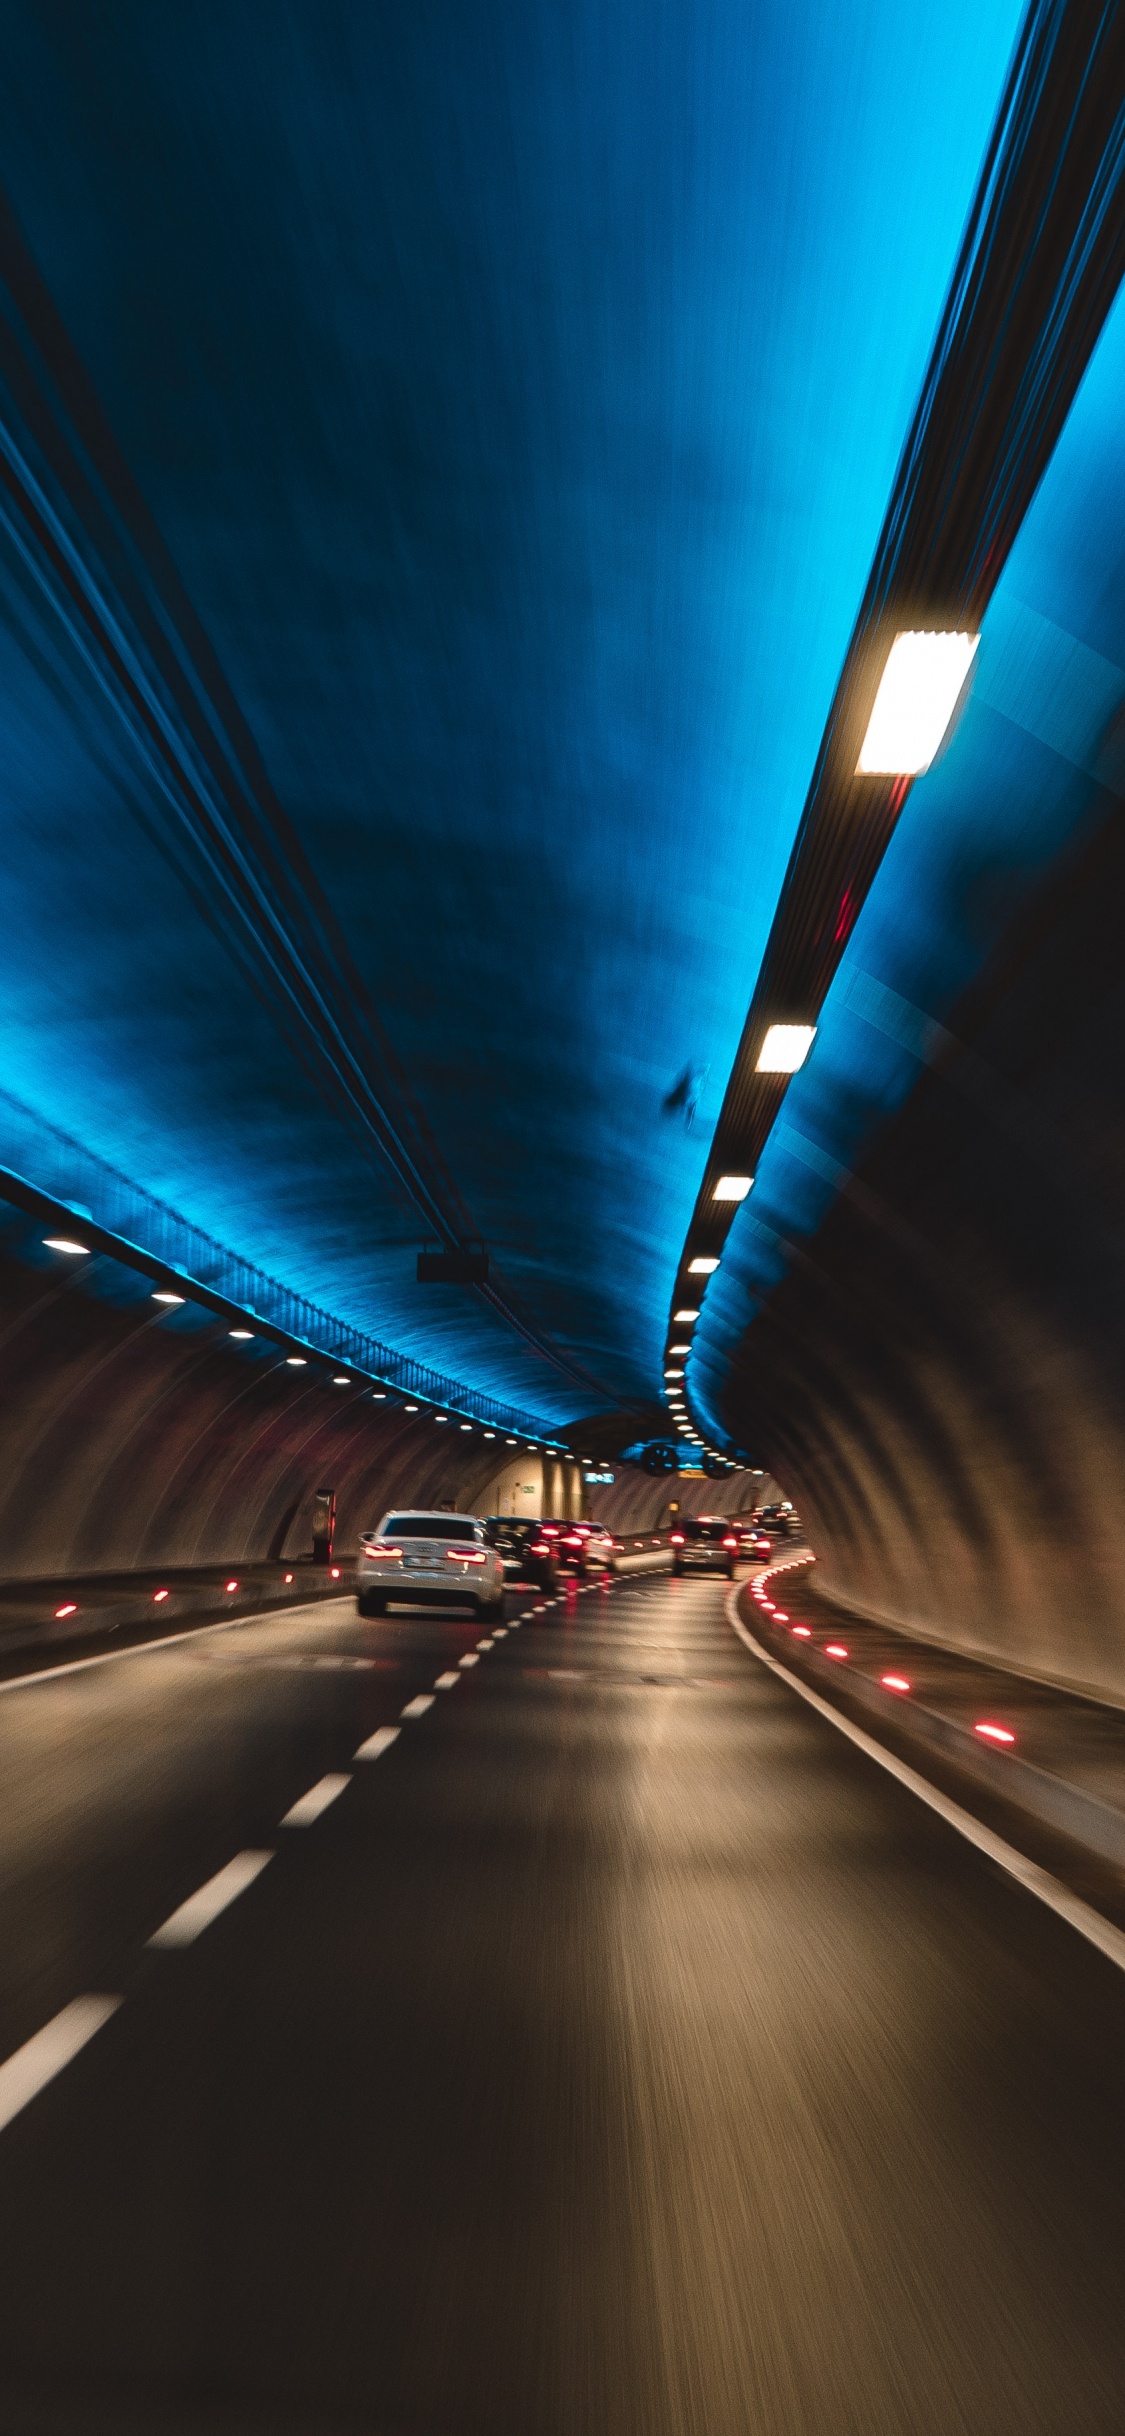 Lumière Bleue Dans le Tunnel Pendant la Nuit. Wallpaper in 1125x2436 Resolution